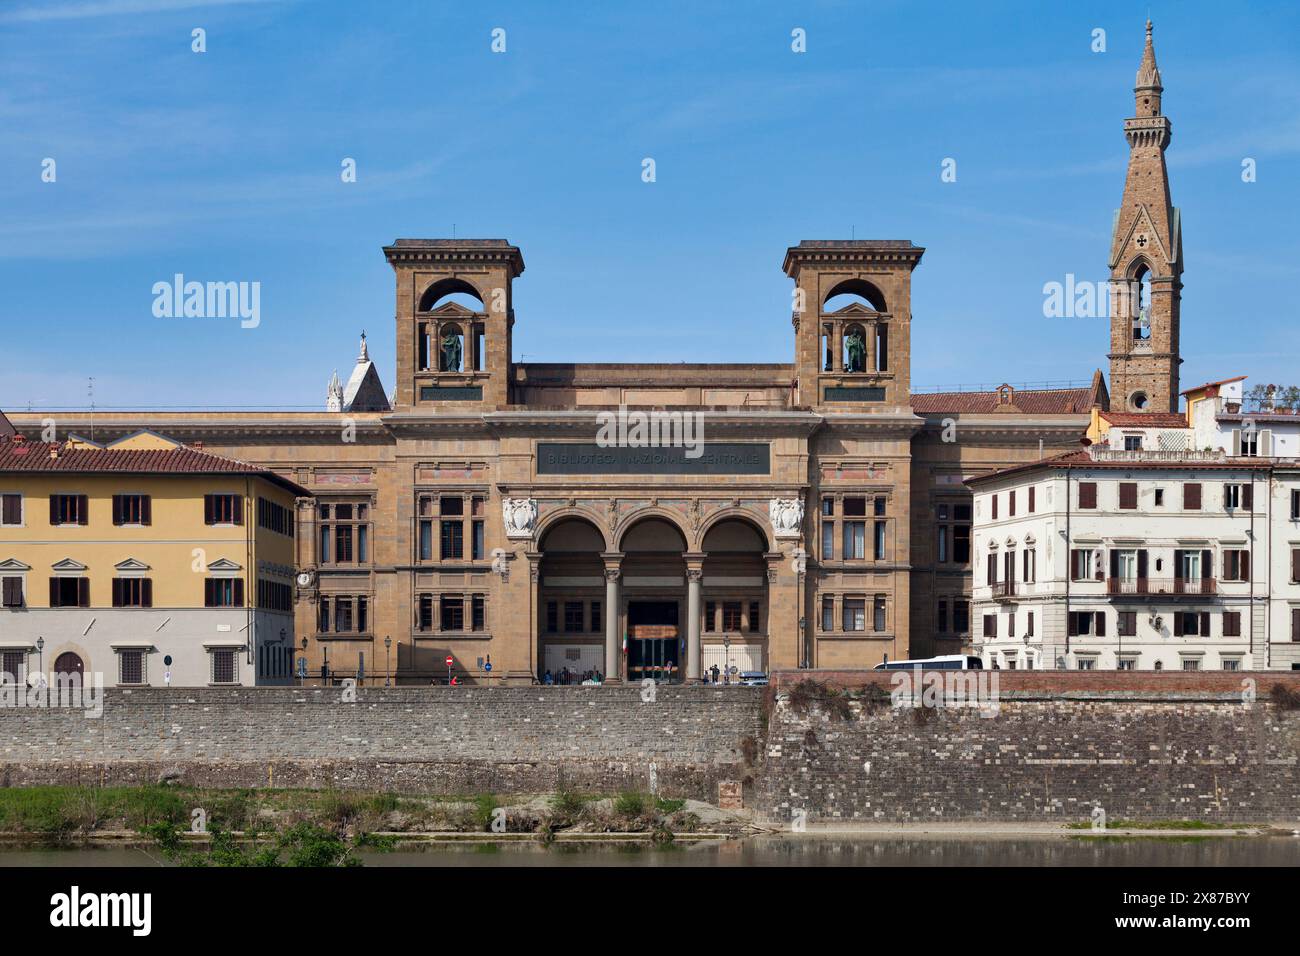 La Bibliothèque centrale nationale de Florence (en italien : Biblioteca Nazionale centrale di Firenze) est la bibliothèque centrale fondée au XVIIIe siècle. Banque D'Images